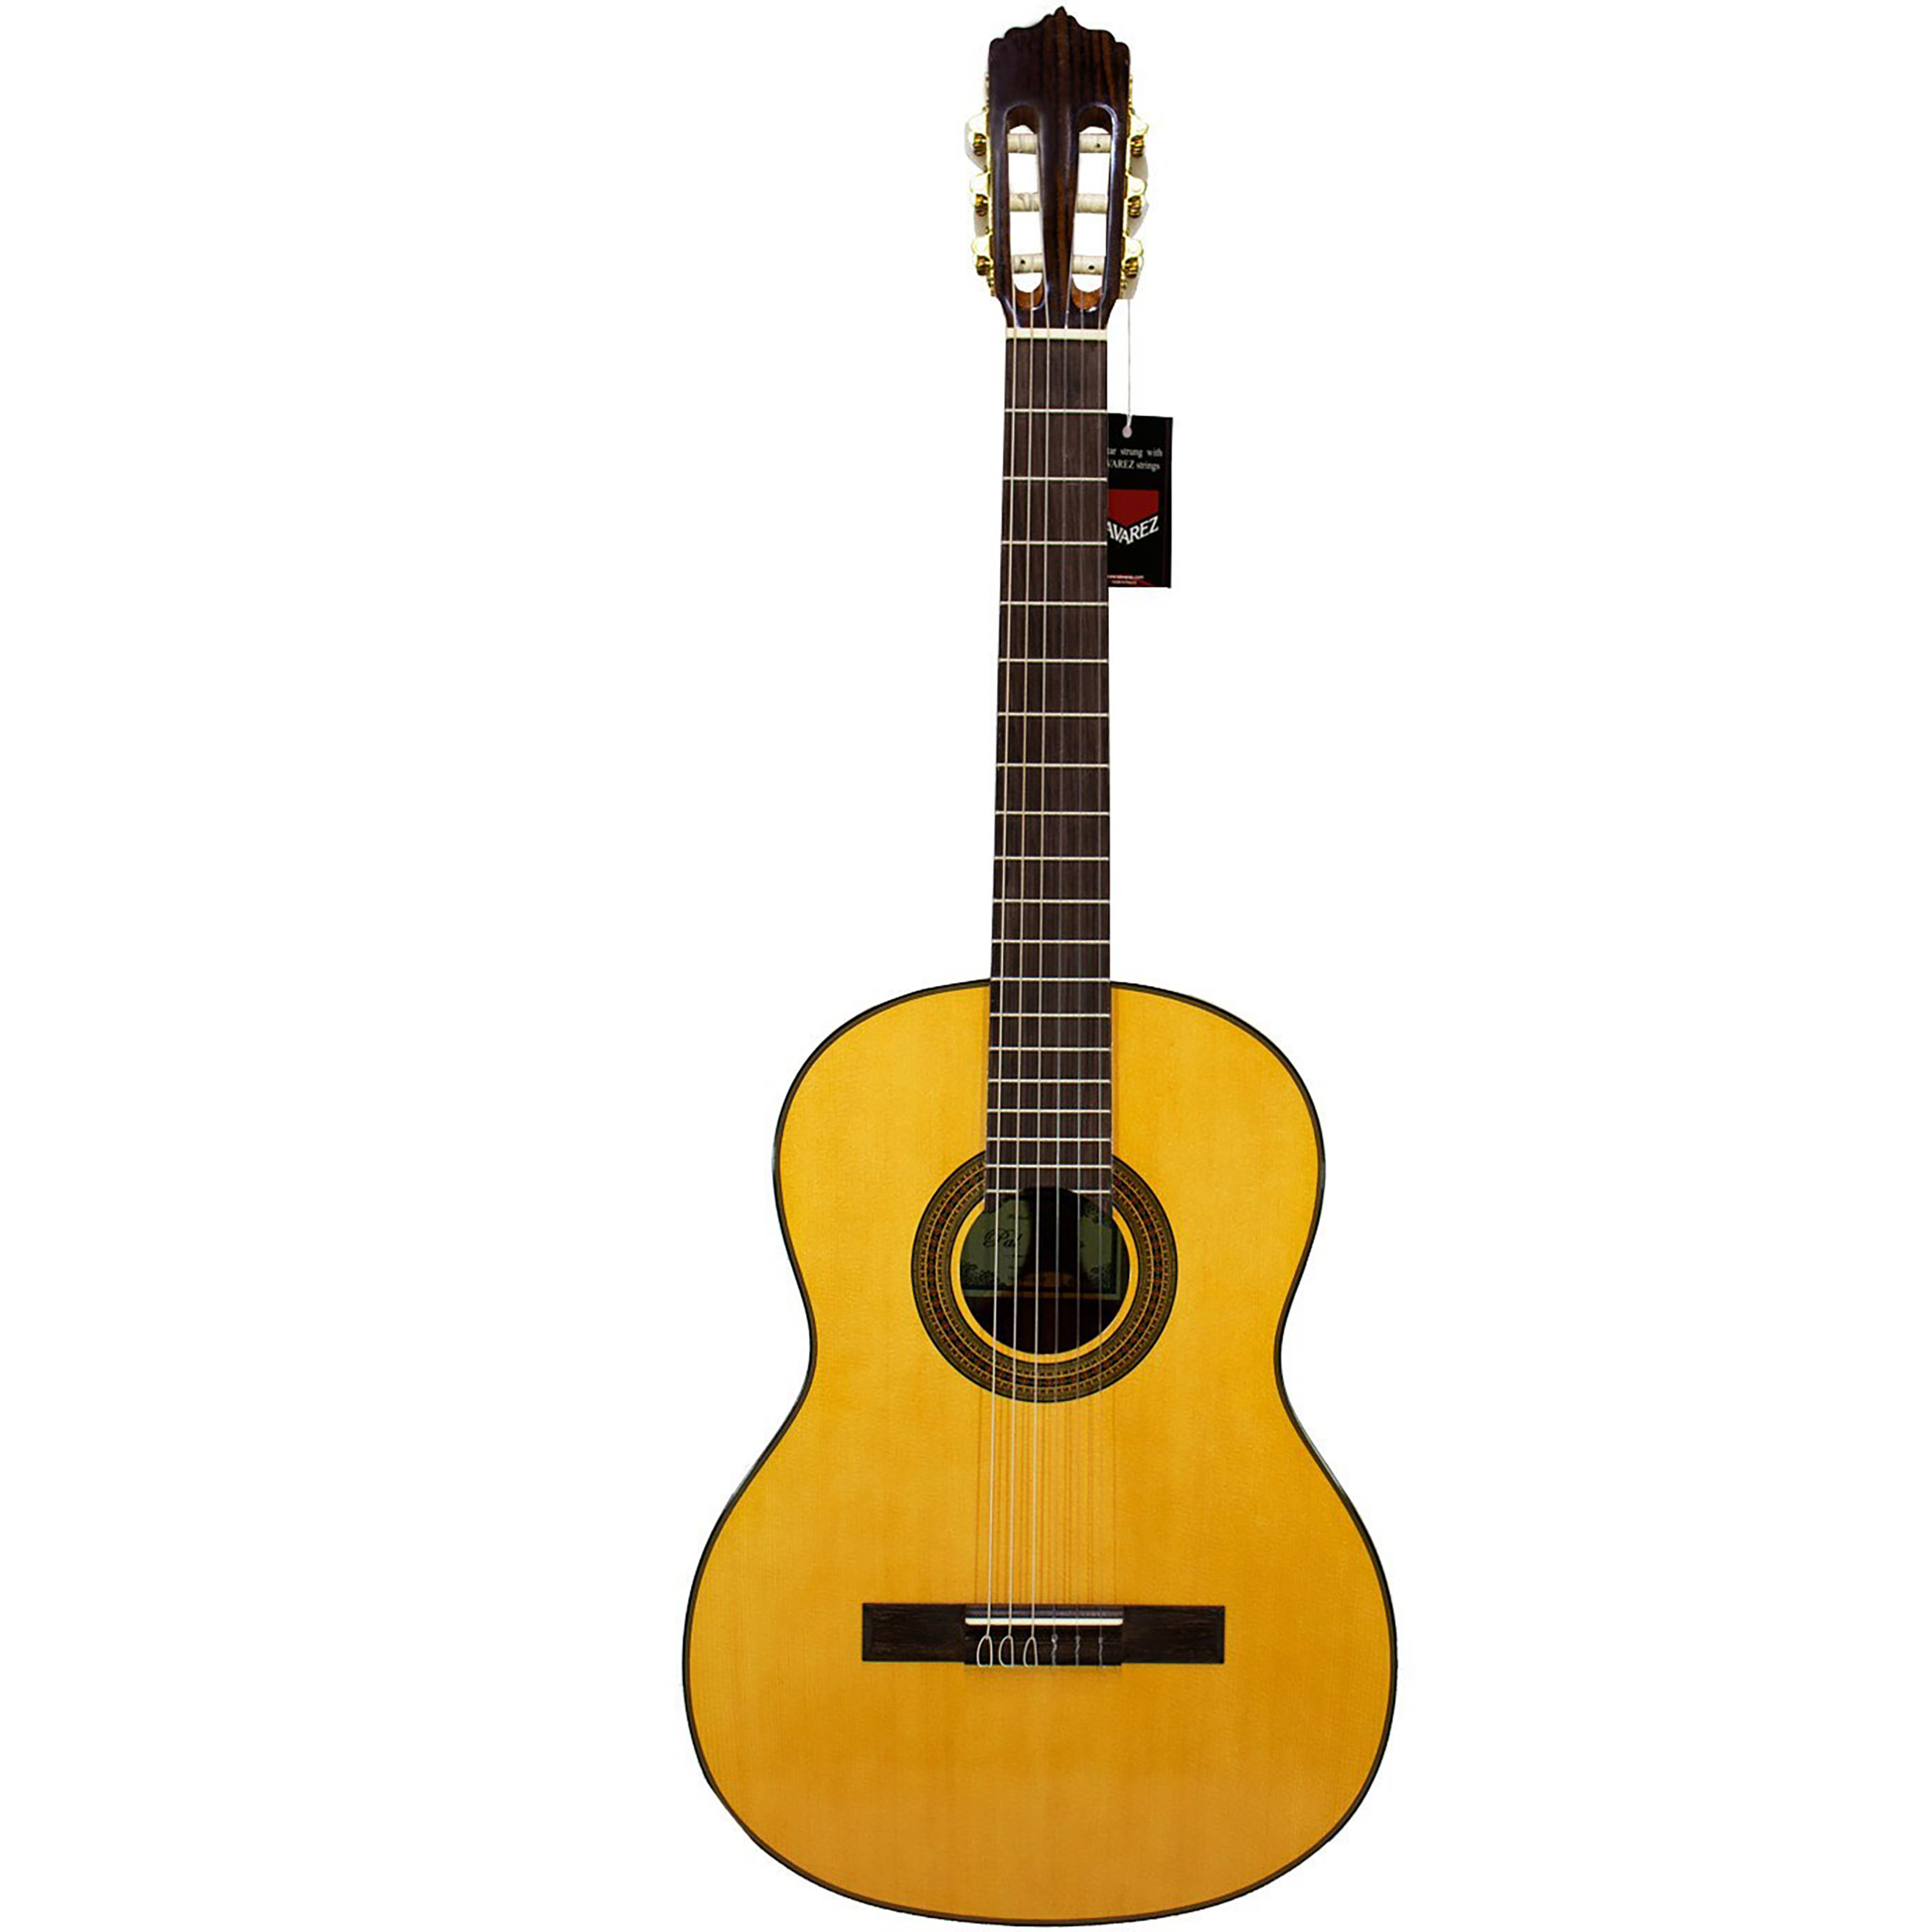 نکته خرید - قیمت روز گیتار کلاسیک پالادو مدل CG90 خرید